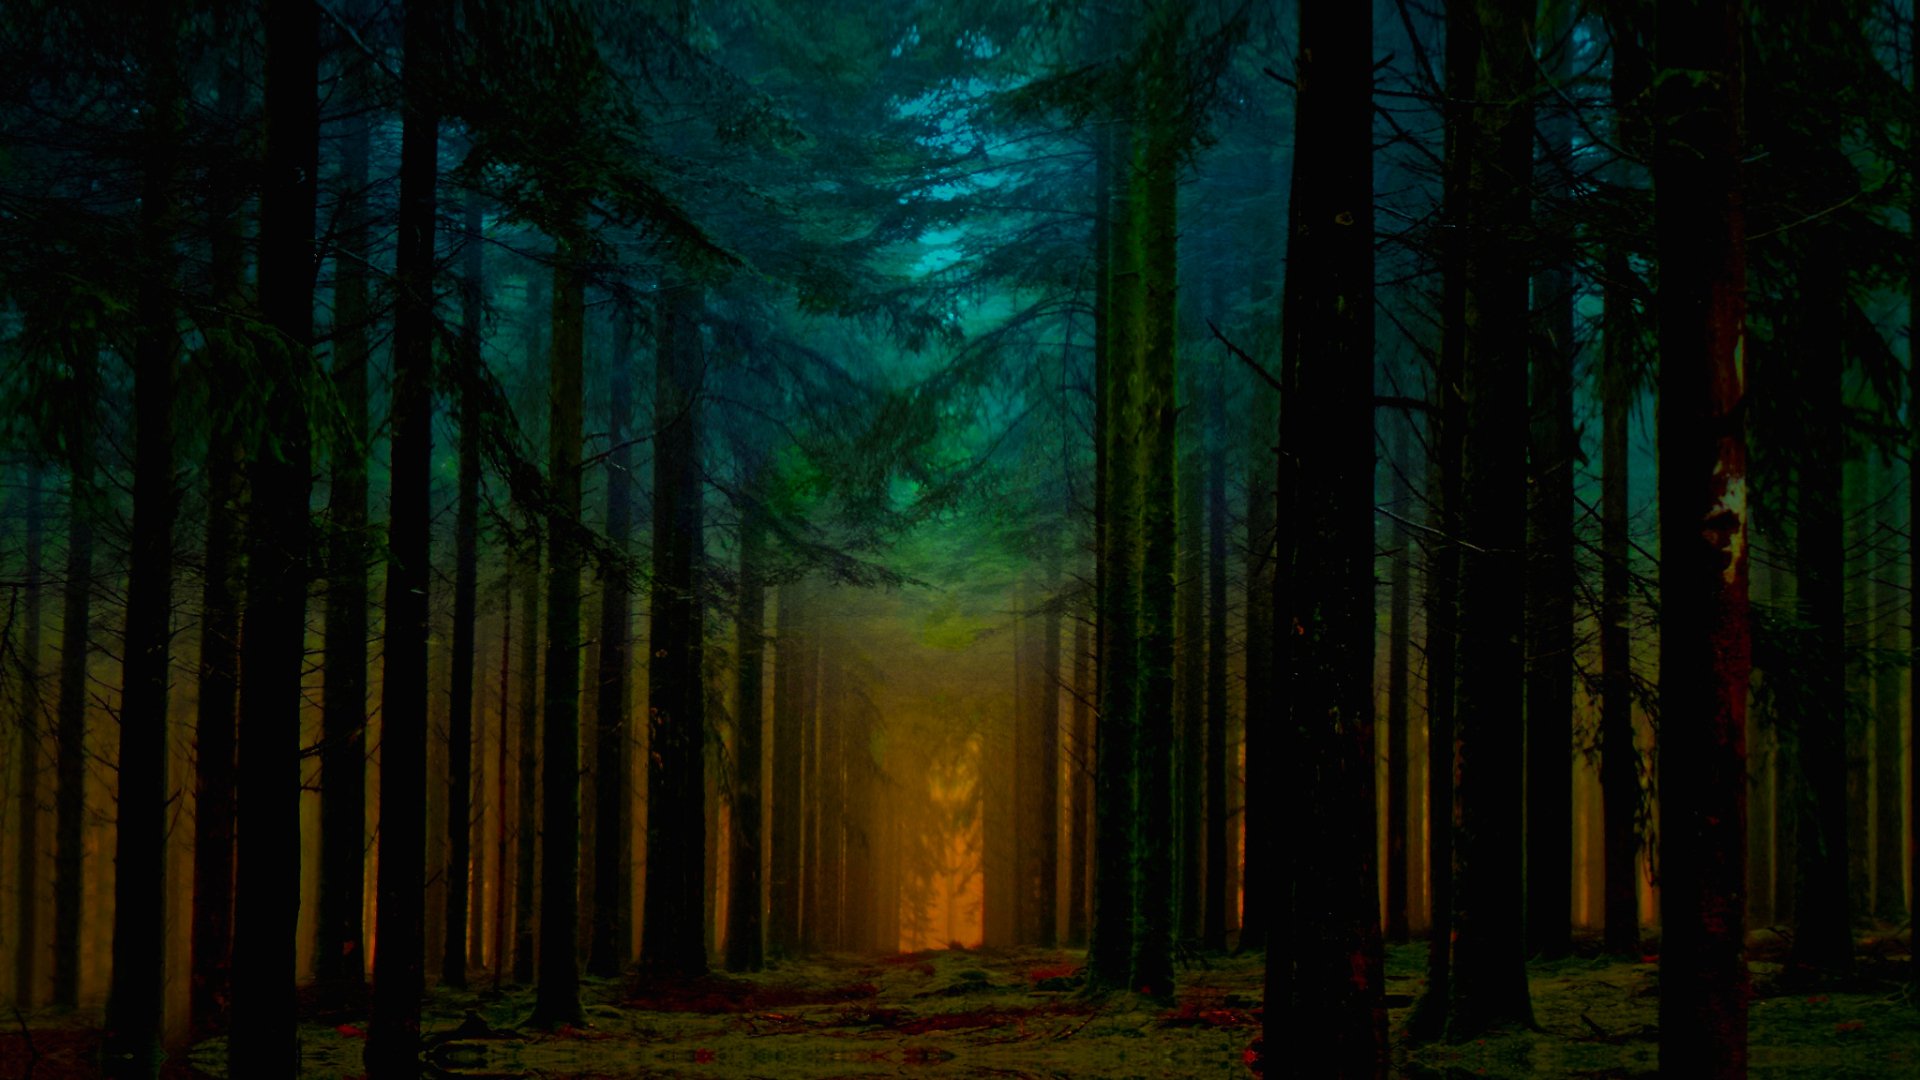 Forest at Dawn 高清壁纸 | 桌面背景 | 2048x1152 | ID:673642 - Wallpaper Abyss